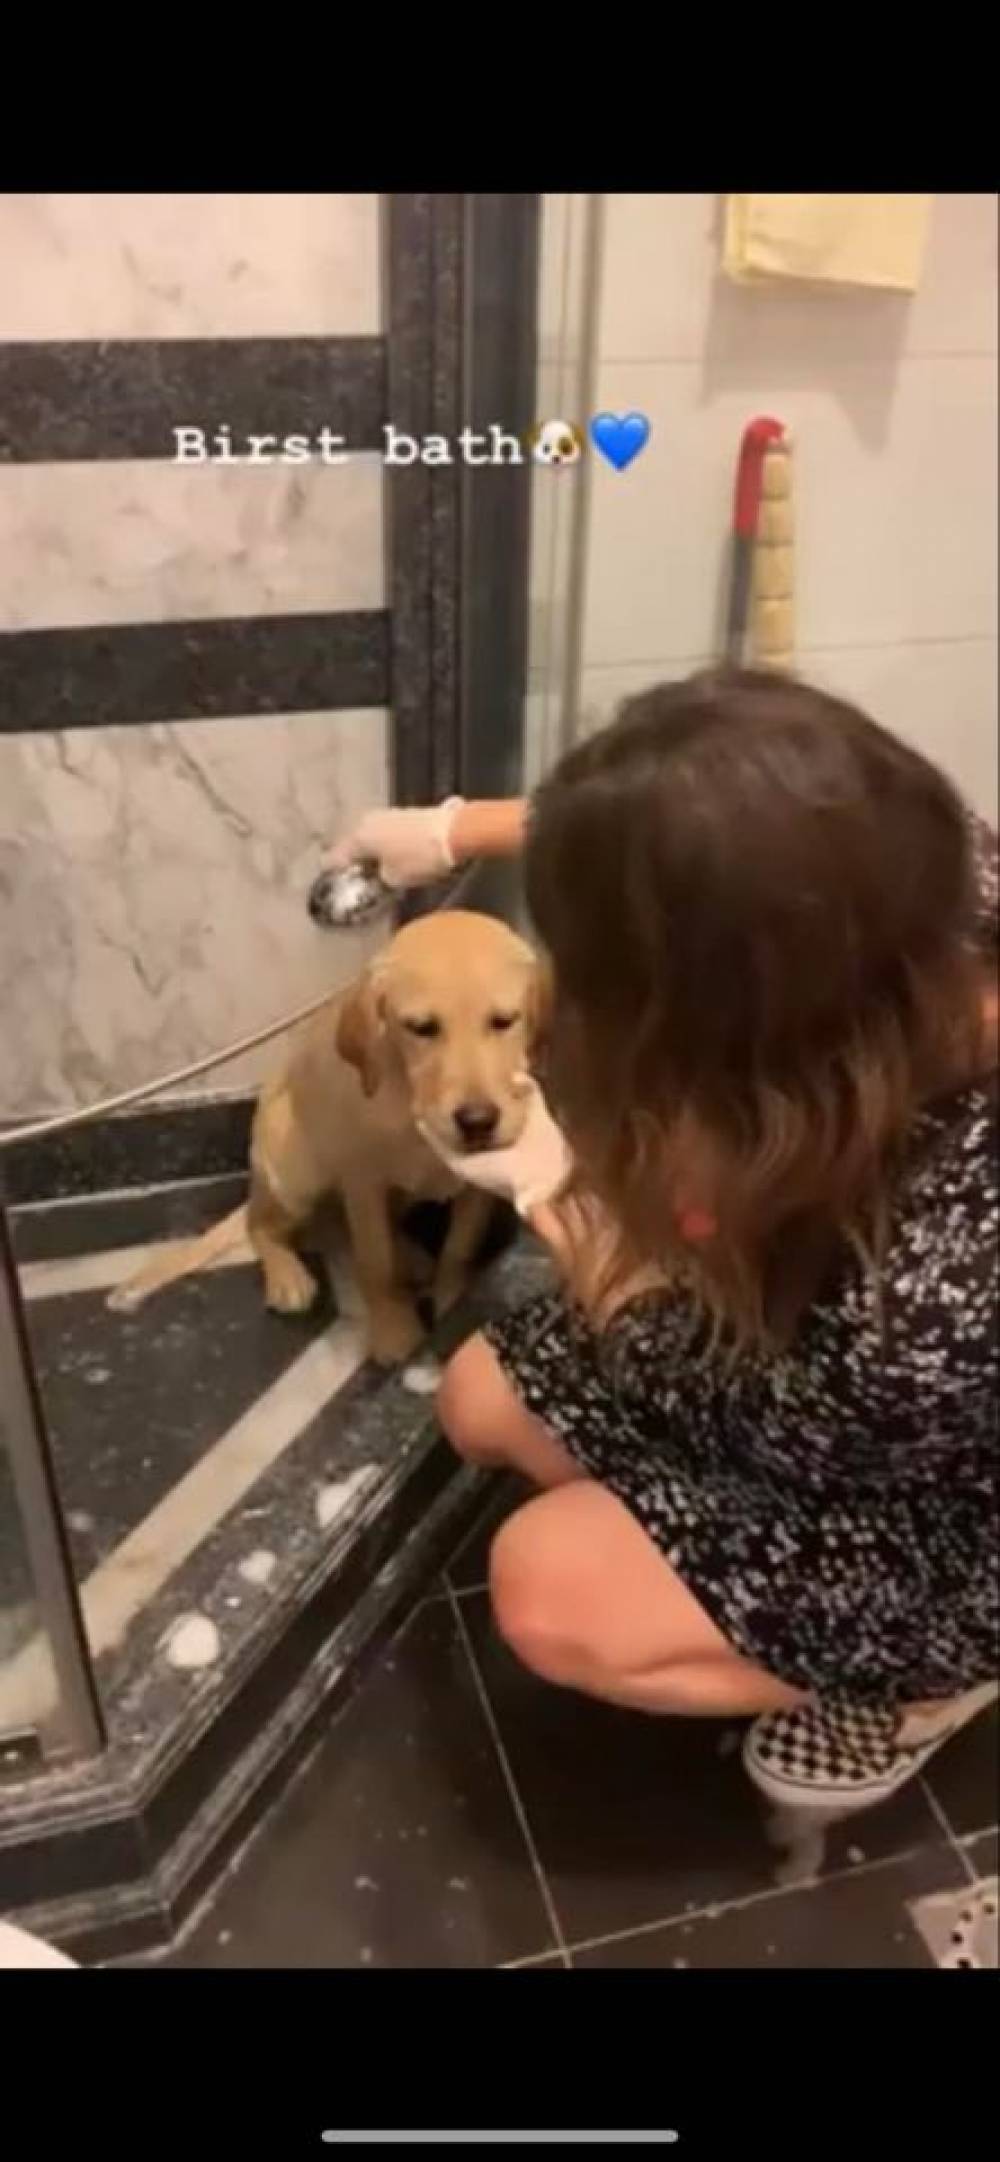 Մարիամ Փաշինյանն առաջին անգամ լողացնում է իր՝ Մոլի անունով շանը (տեսանյութ)